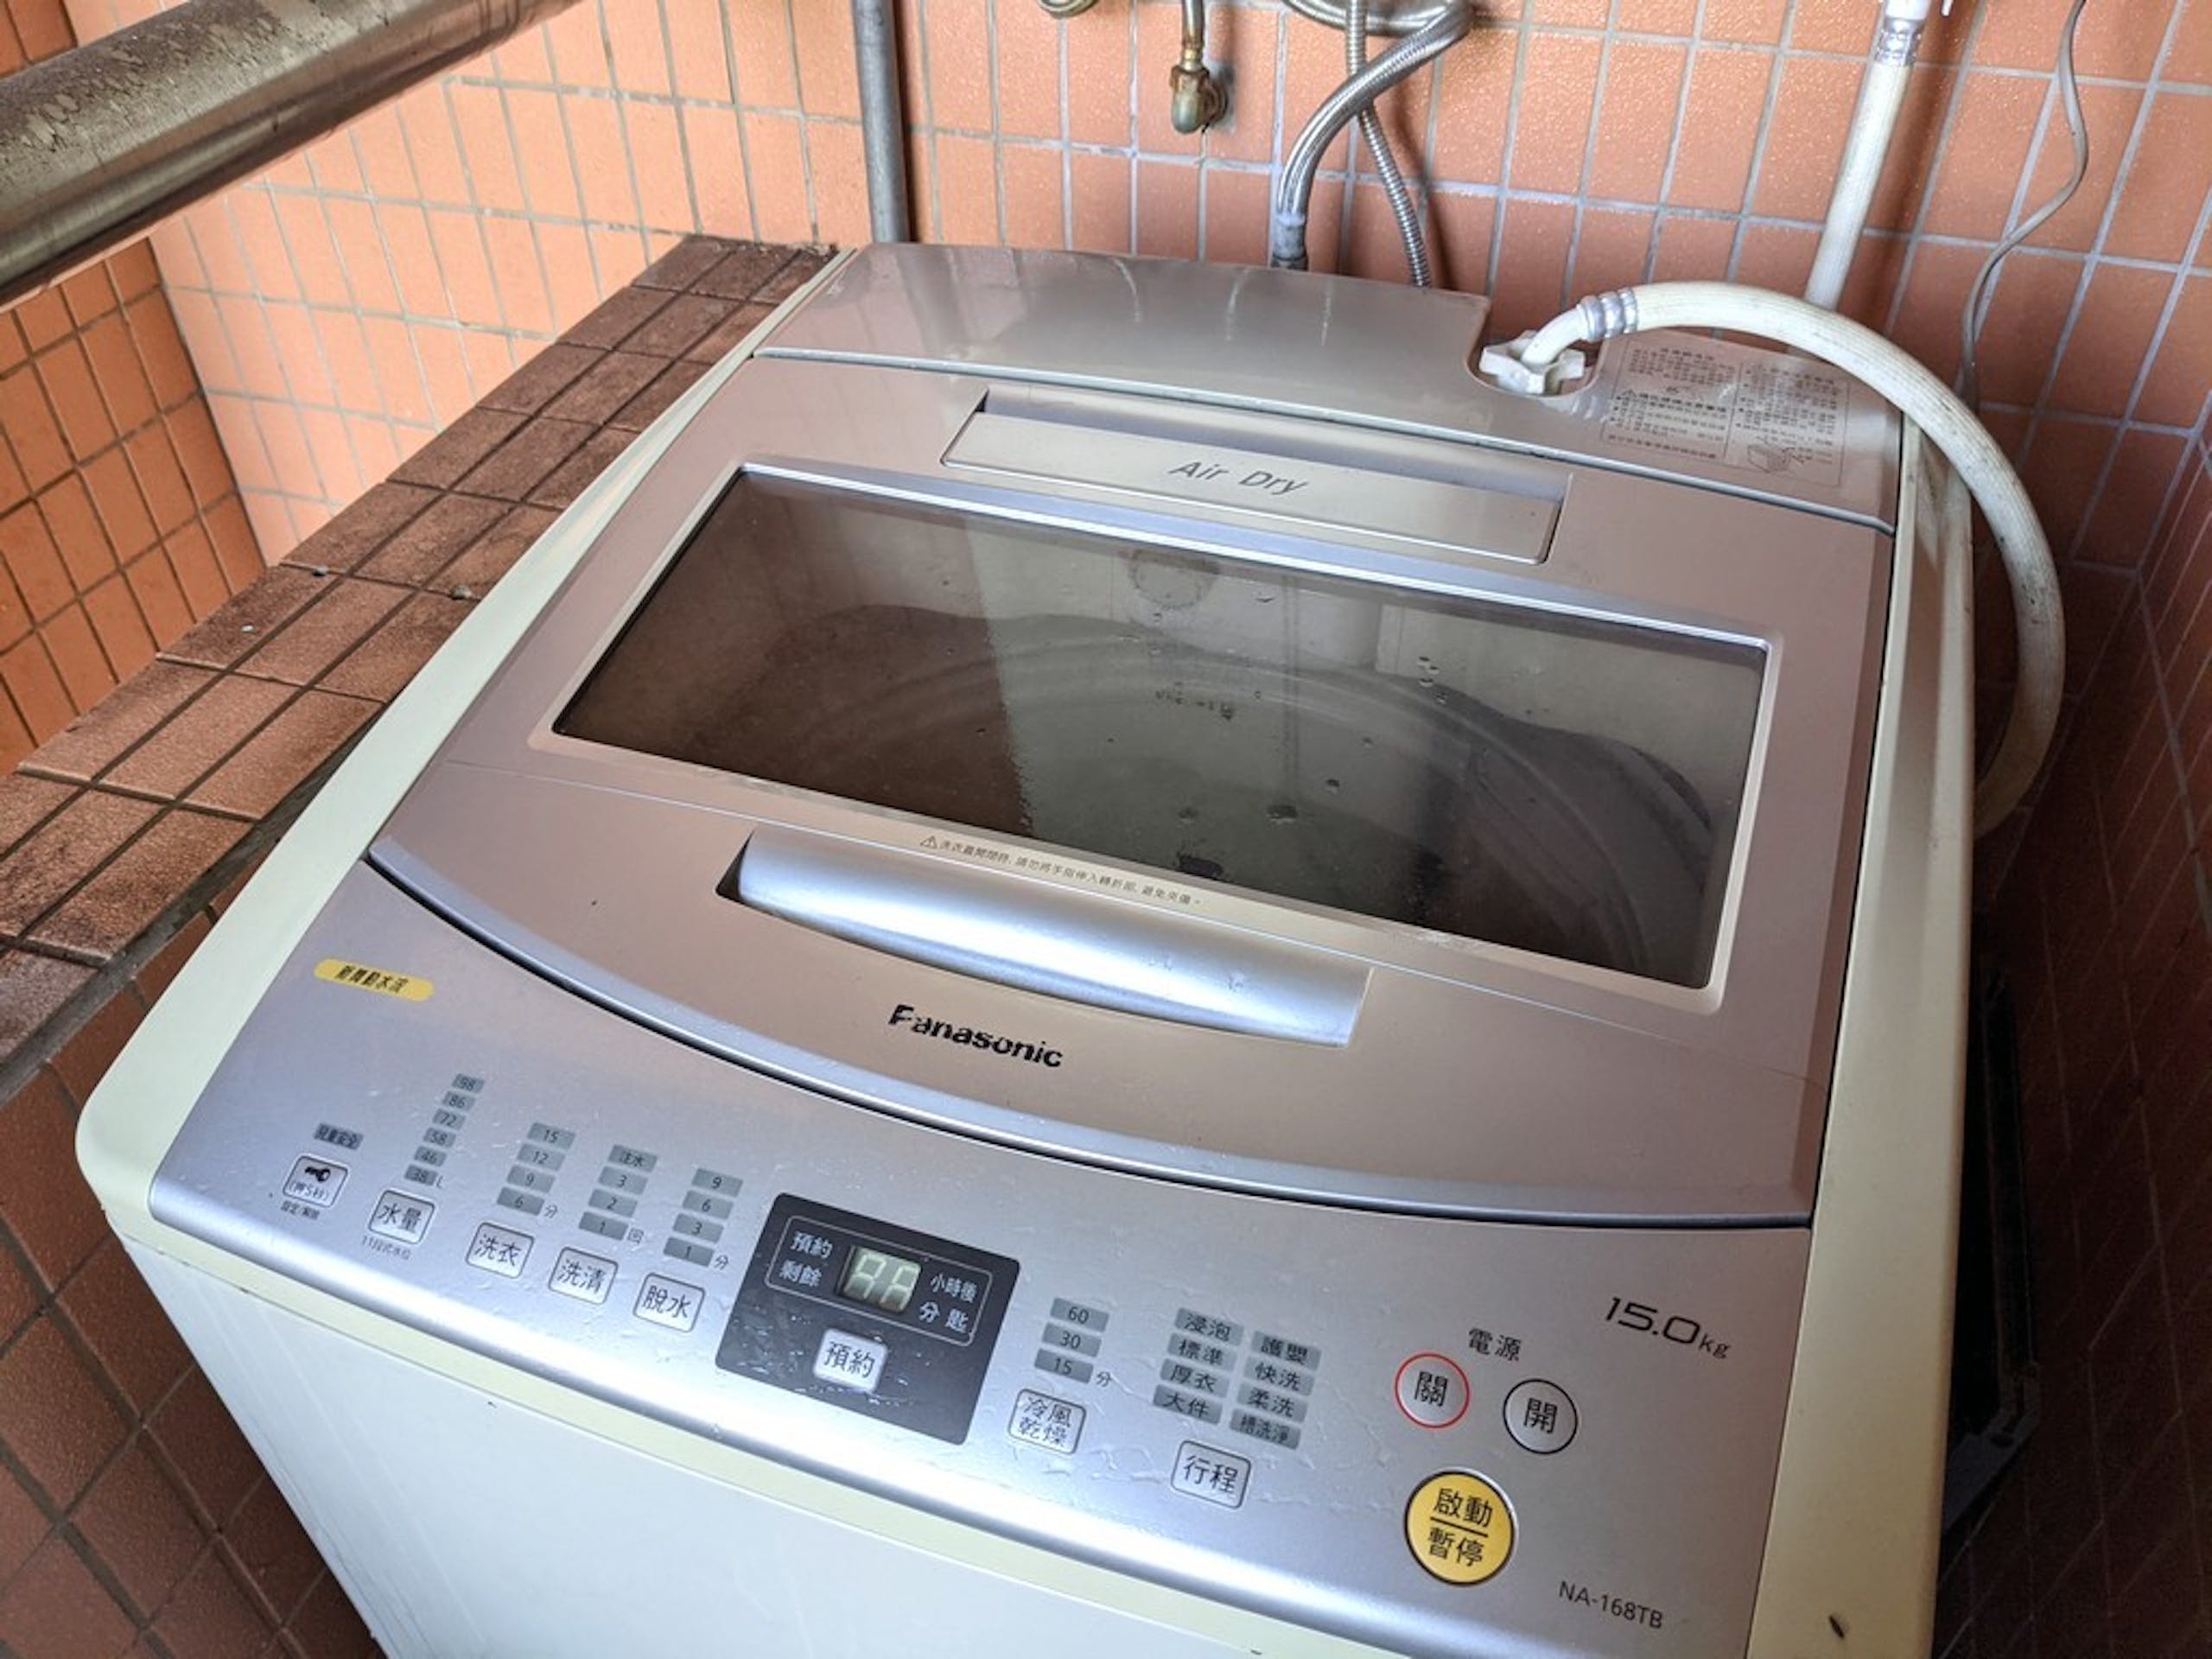 照片中提到了Fanasonic、15.0kg、12，包含了洗衣機、大家電、洗衣機、產品設計、電子產品